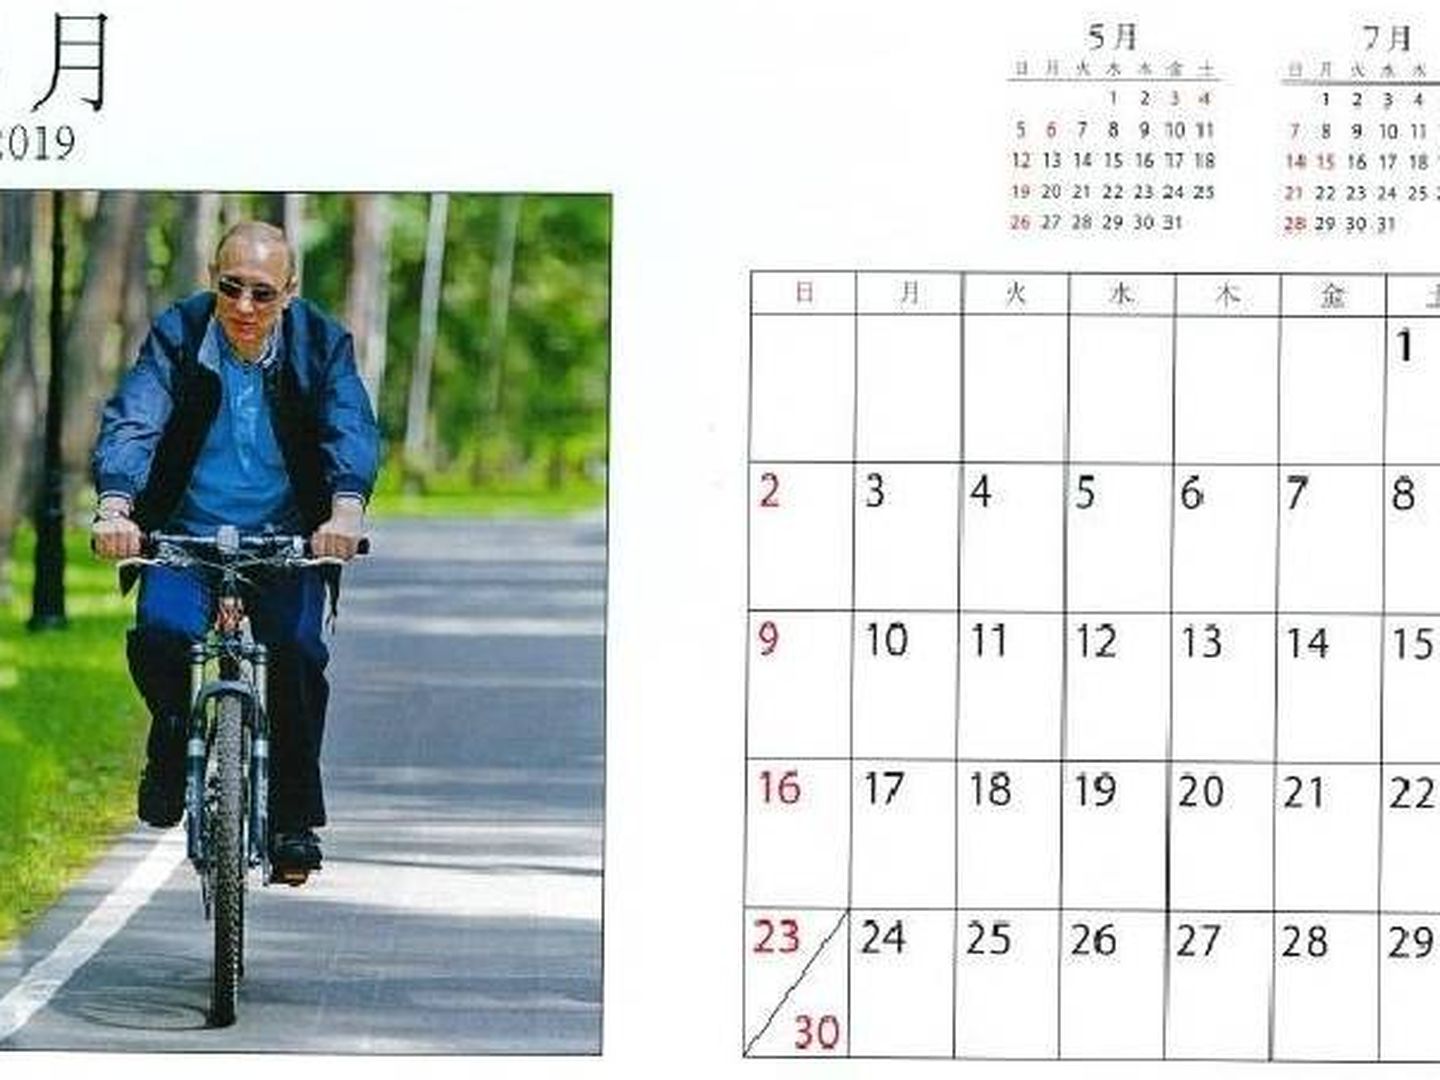 Con Putin, las bicicletas no solo son para el verano. (Loft)